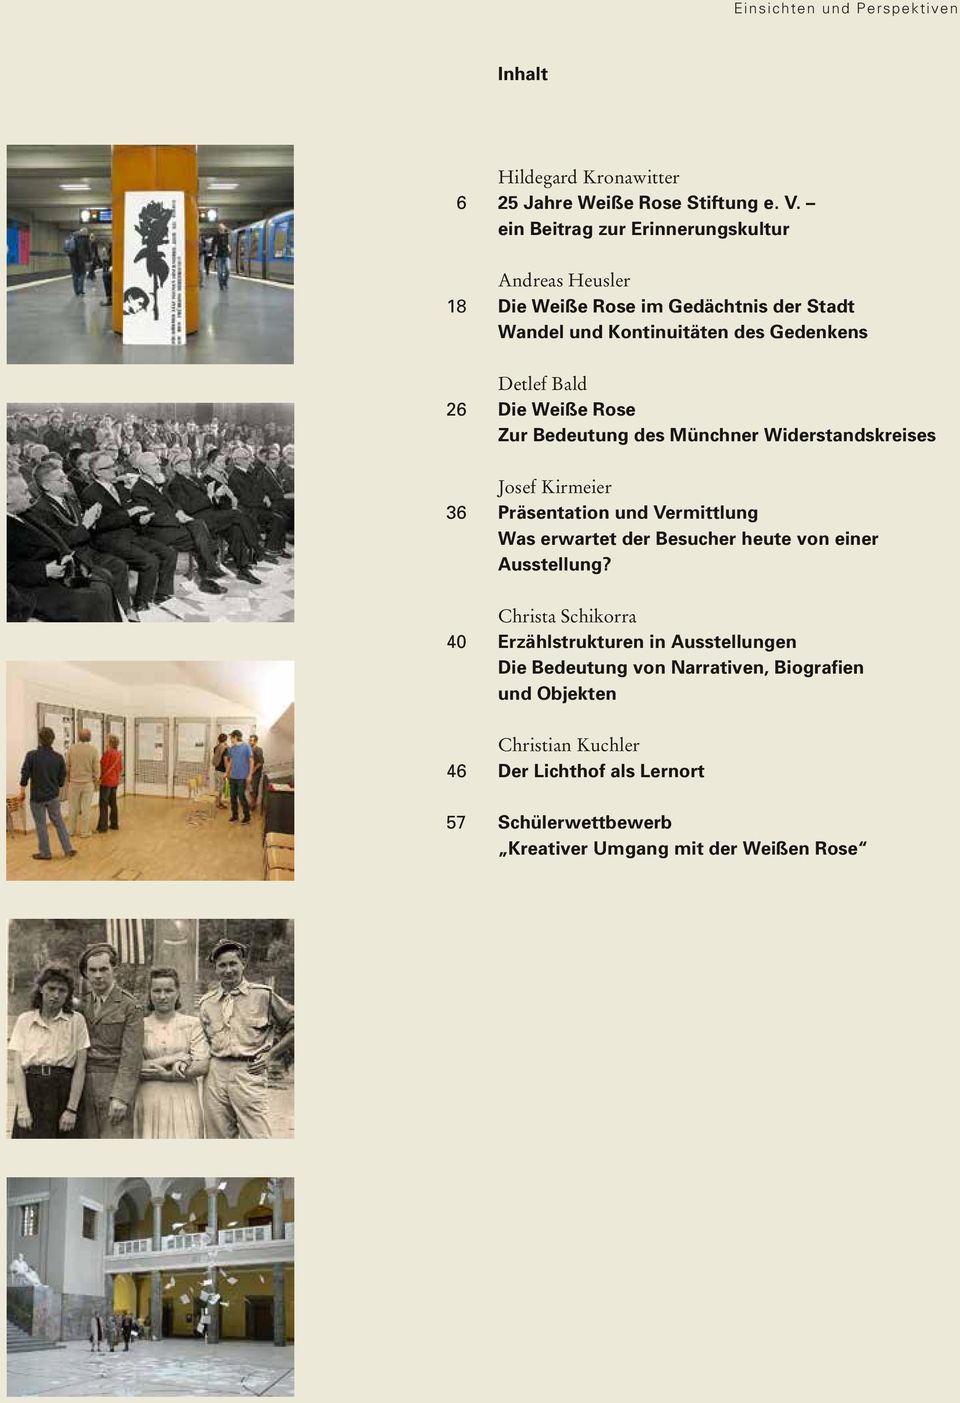 Bedeutung des Münchner Widerstandskreises 36 Josef Kirmeier Präsentation und Vermittlung Was erwartet der Besucher heute von einer Ausstellung?